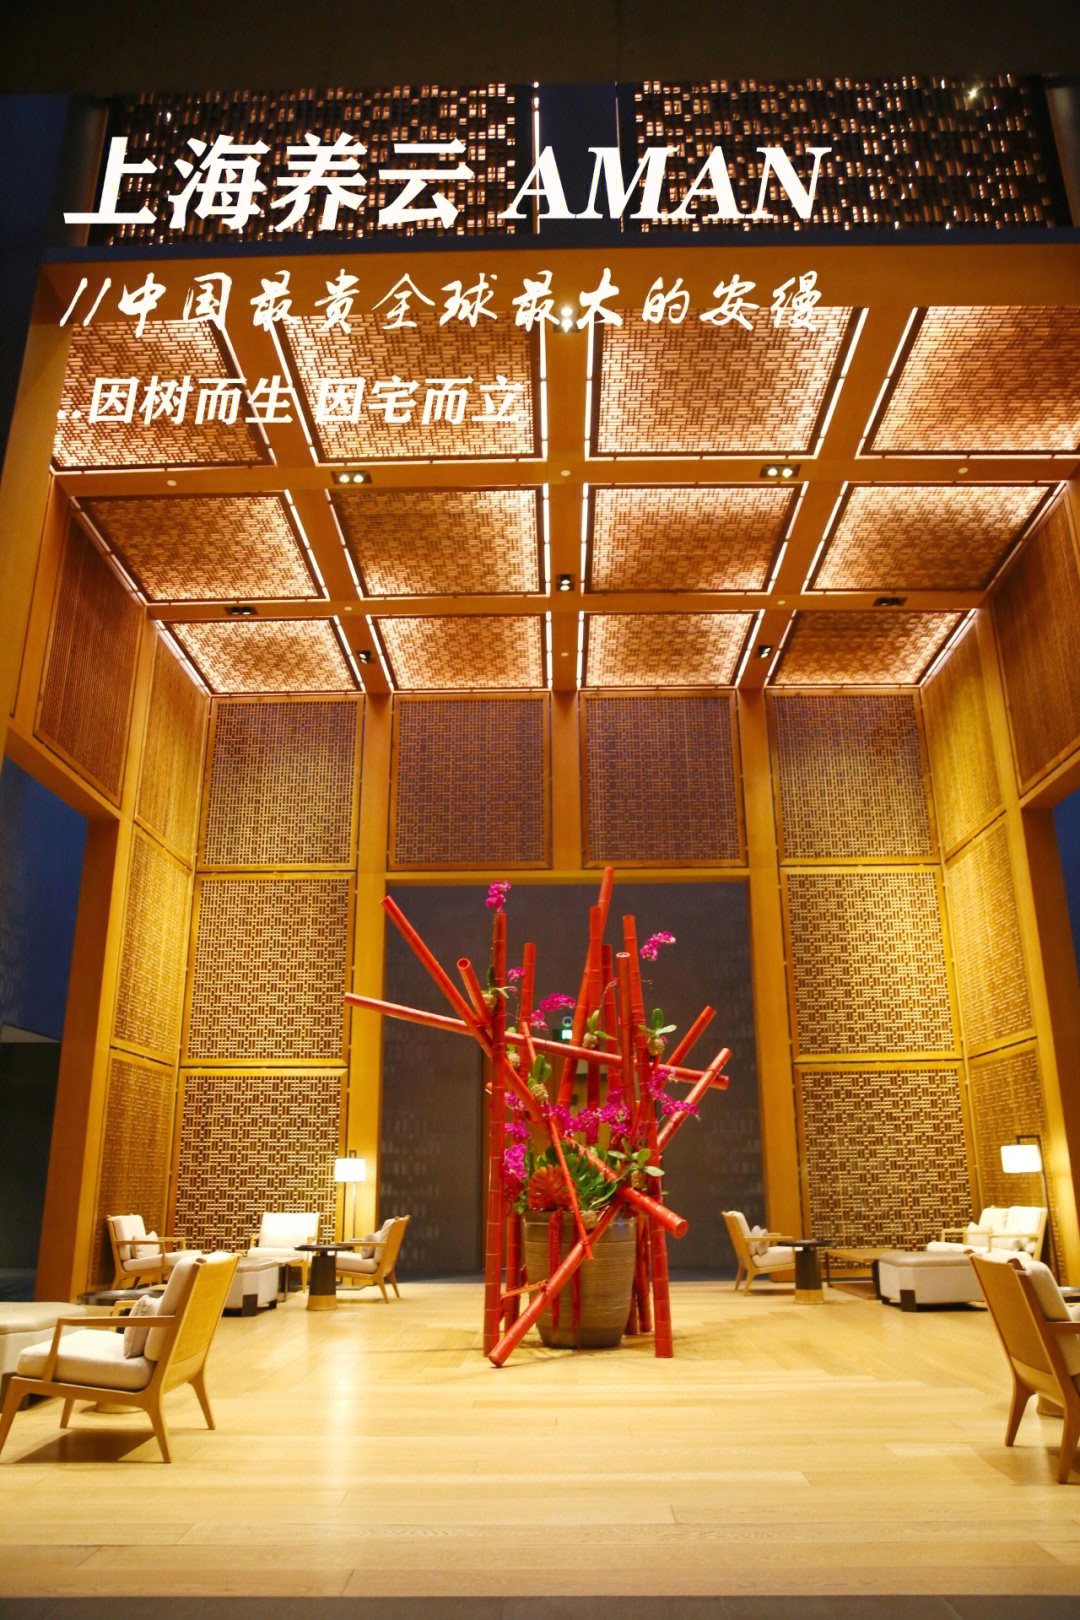 上海安缦酒店 闵行图片